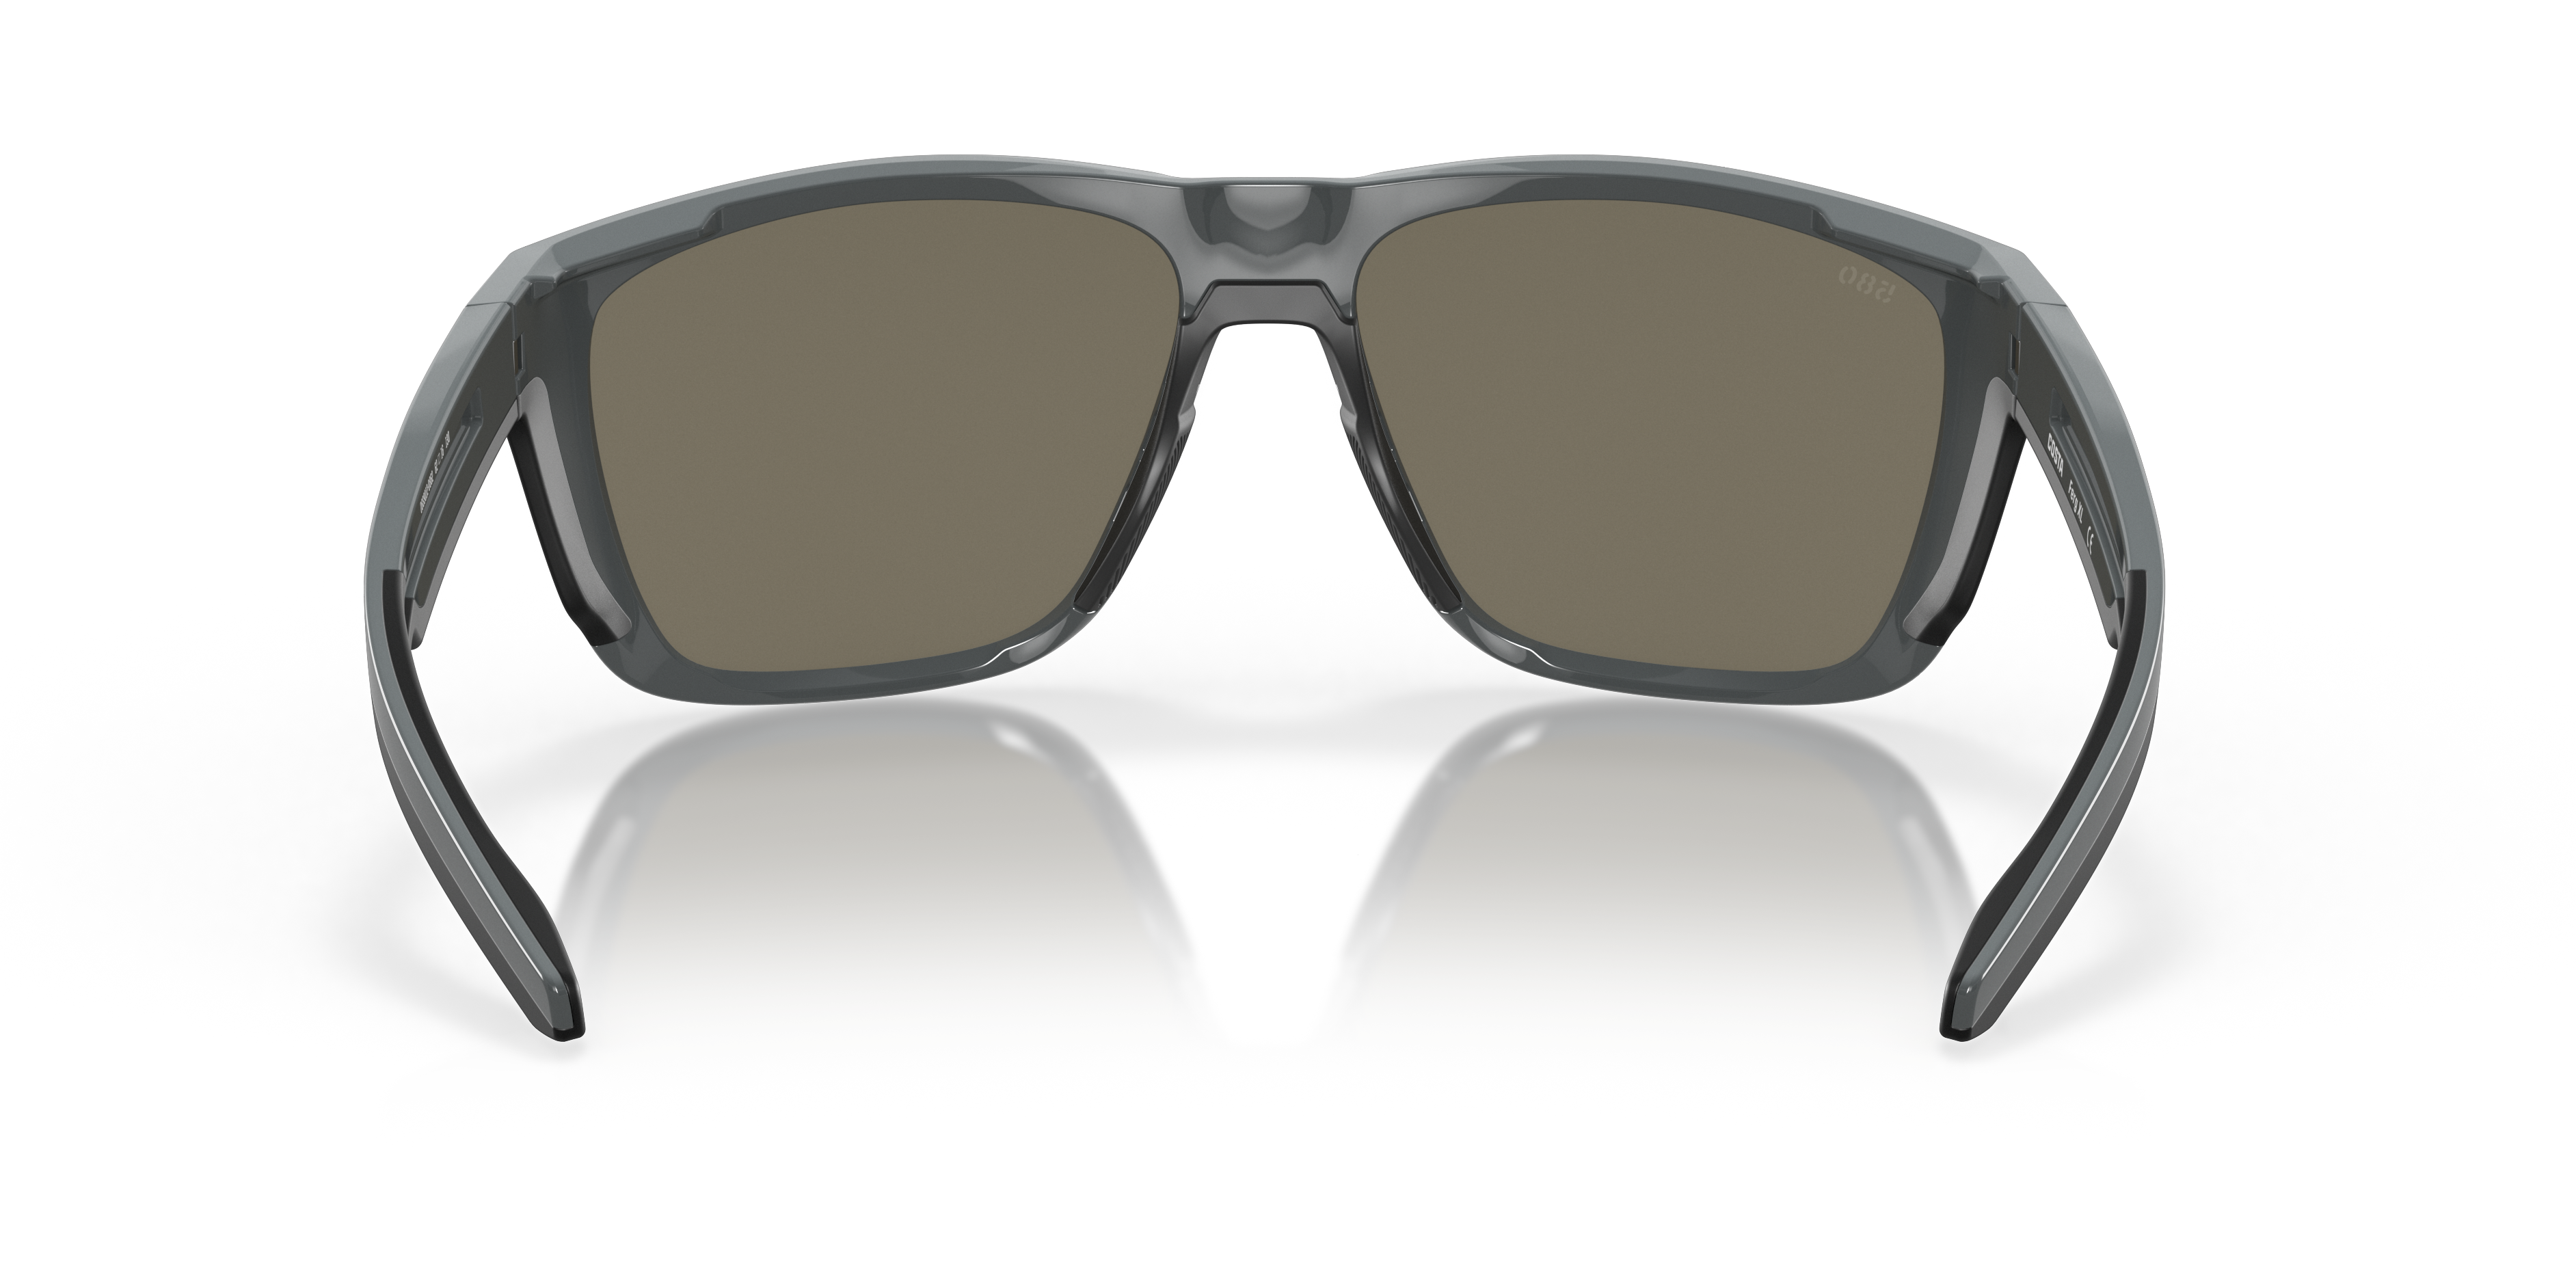 Ferg XL Polarized Sunglasses in Blue Mirror | Costa Del Mar®